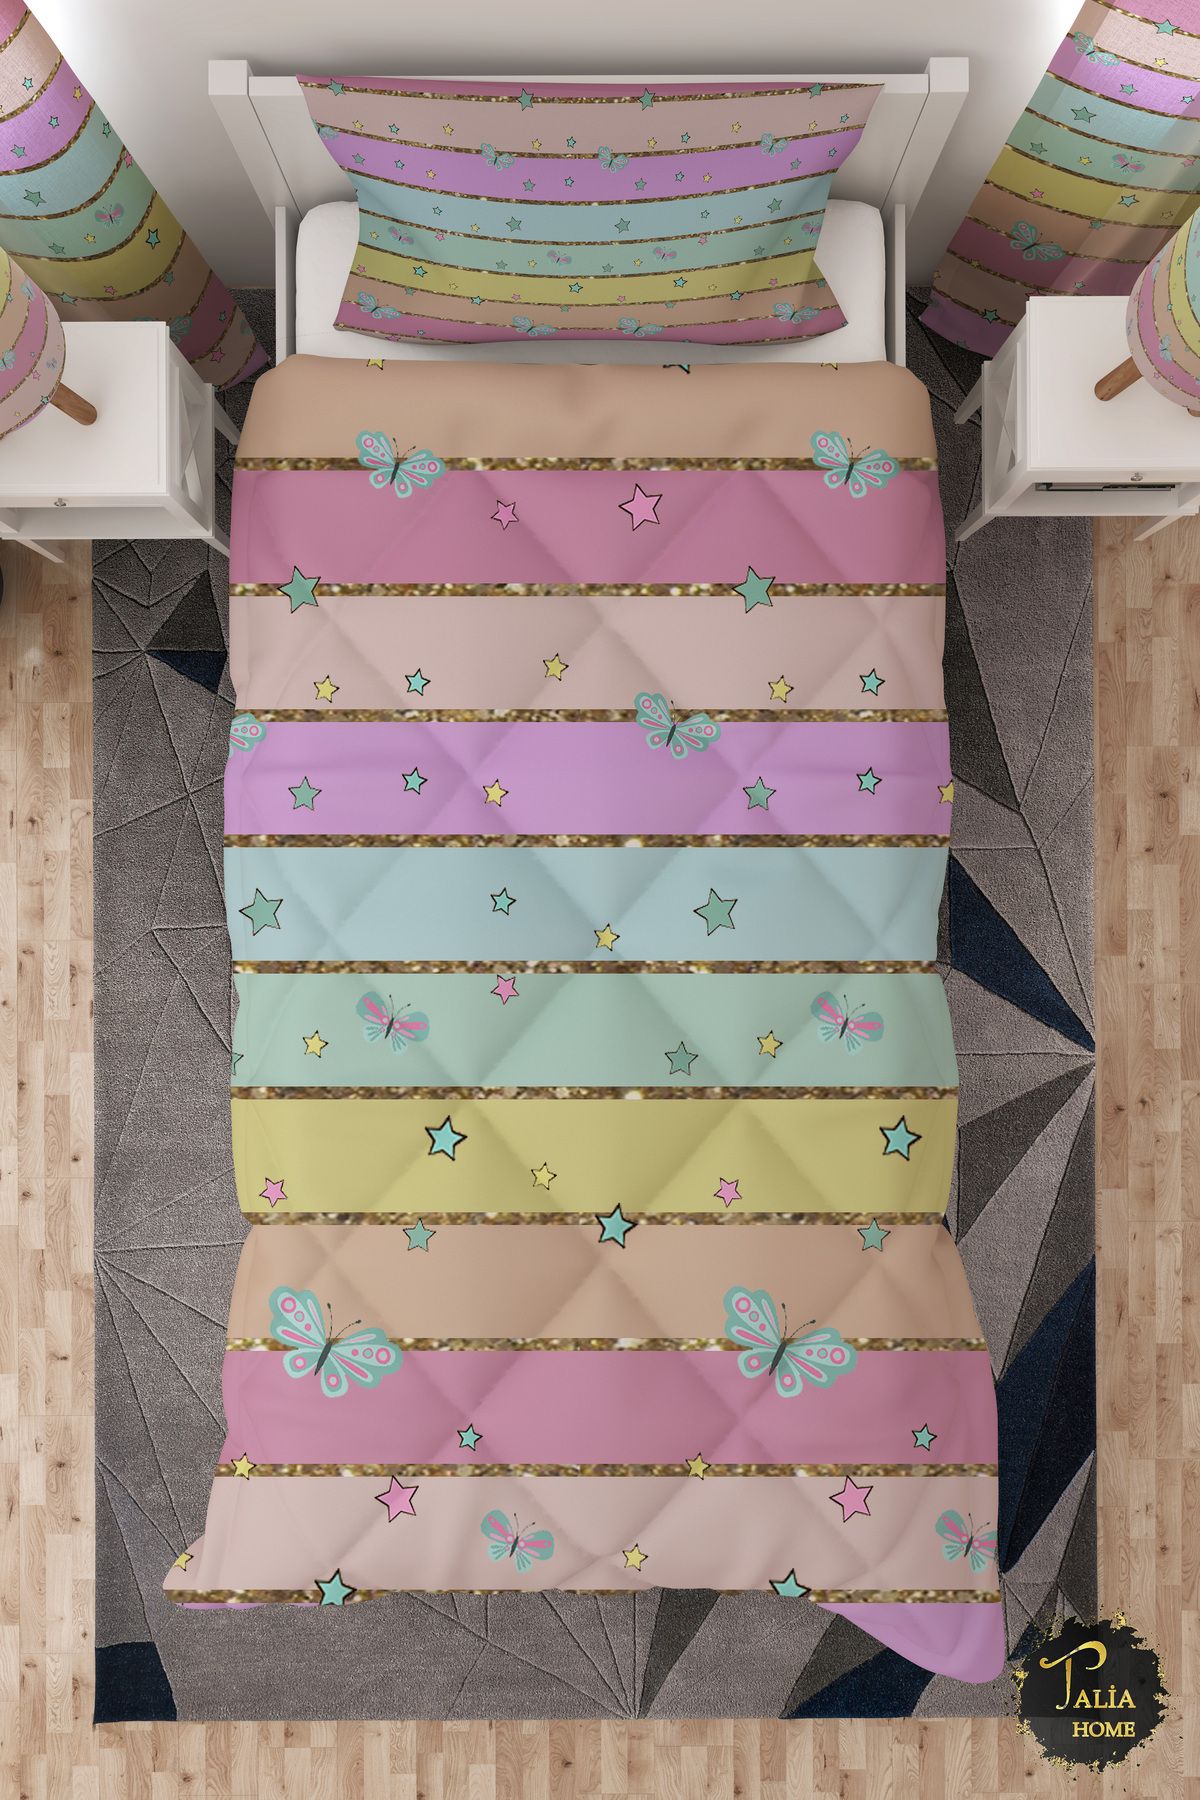 Talia Home Renkli Şeritli Tek Kişilik Çocuk Yorganı Uyku Seti